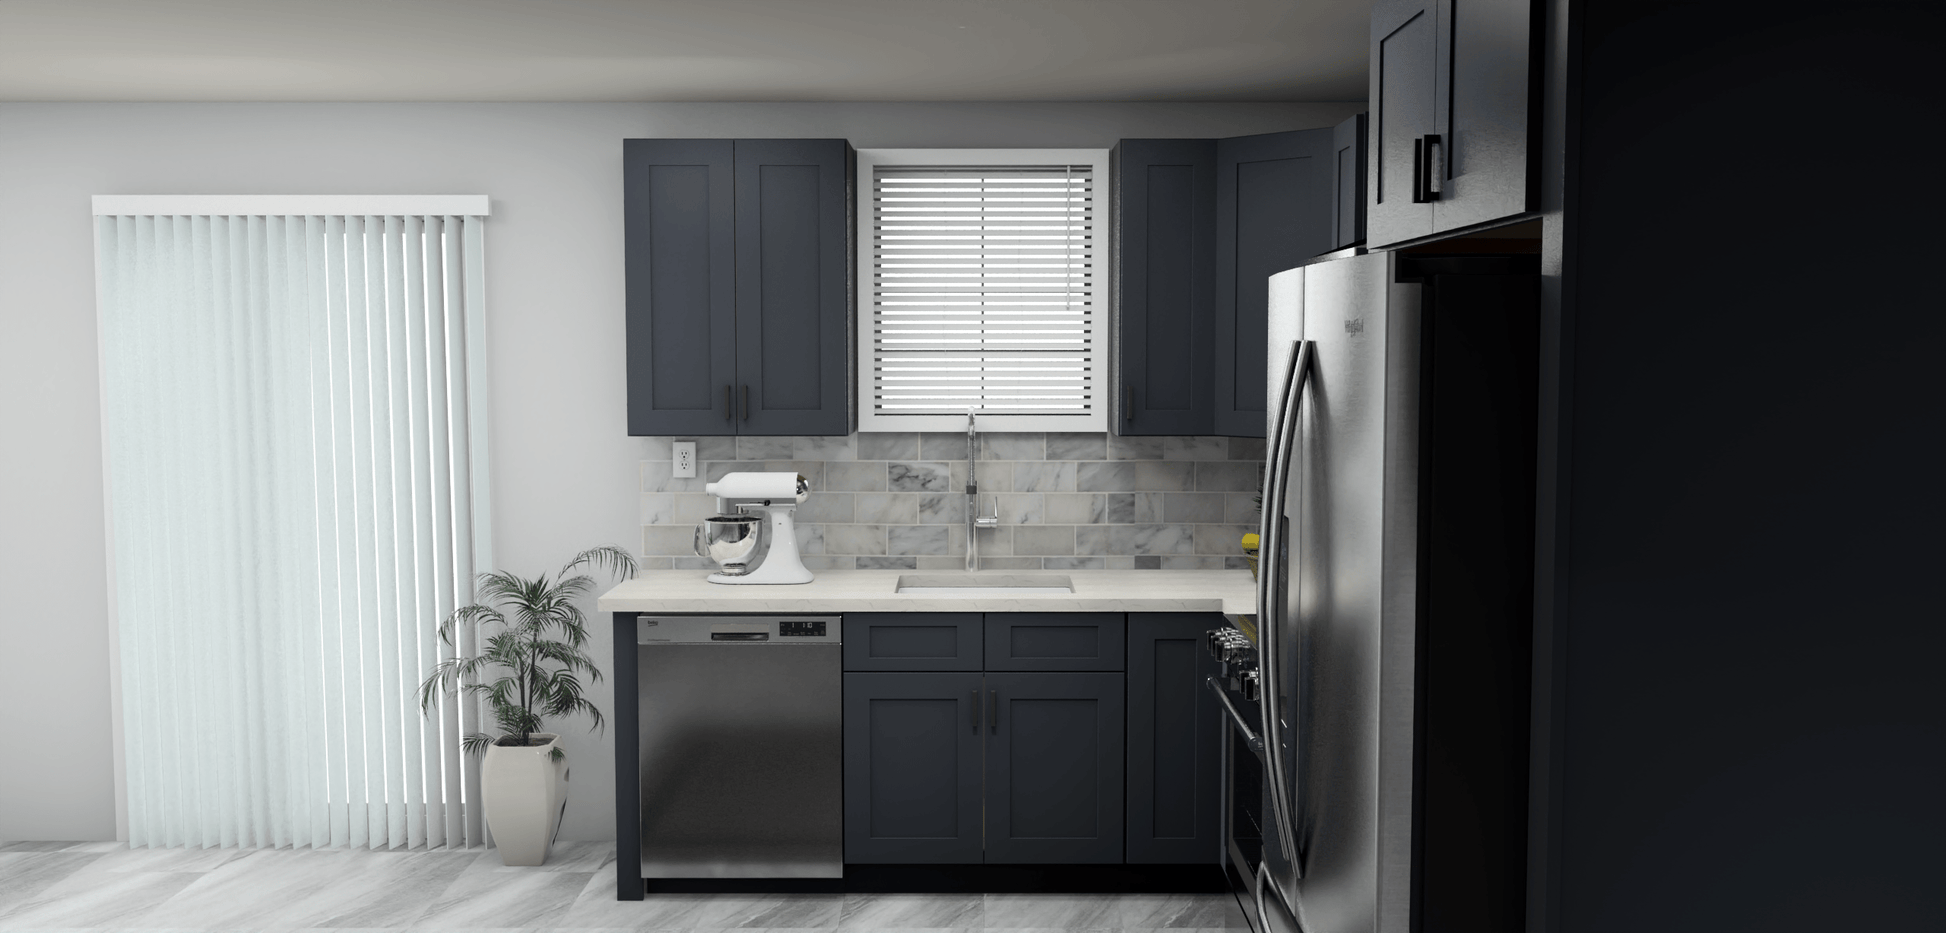 Fabuwood Allure Galaxy Indigo 8 x 11 L Shaped Kitchen Side Layout Photo